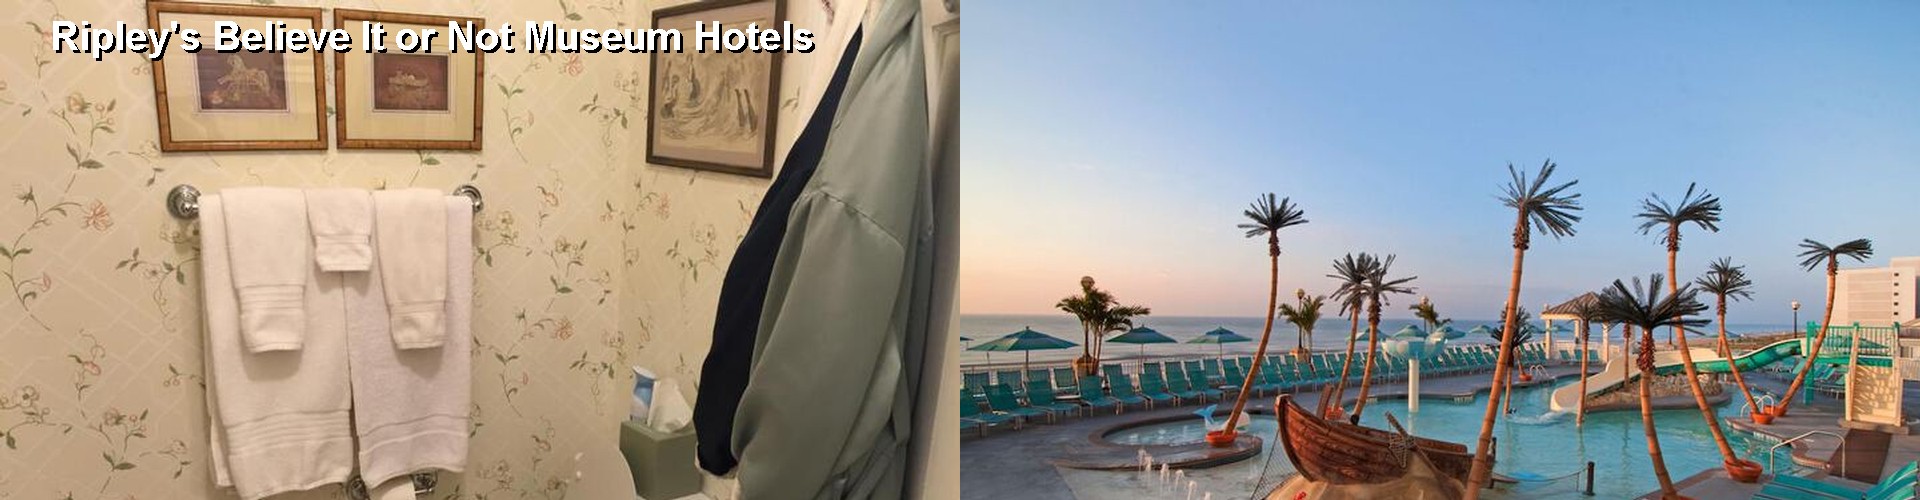 3 Best Hotels near Ripley's Believe It or Not Museum